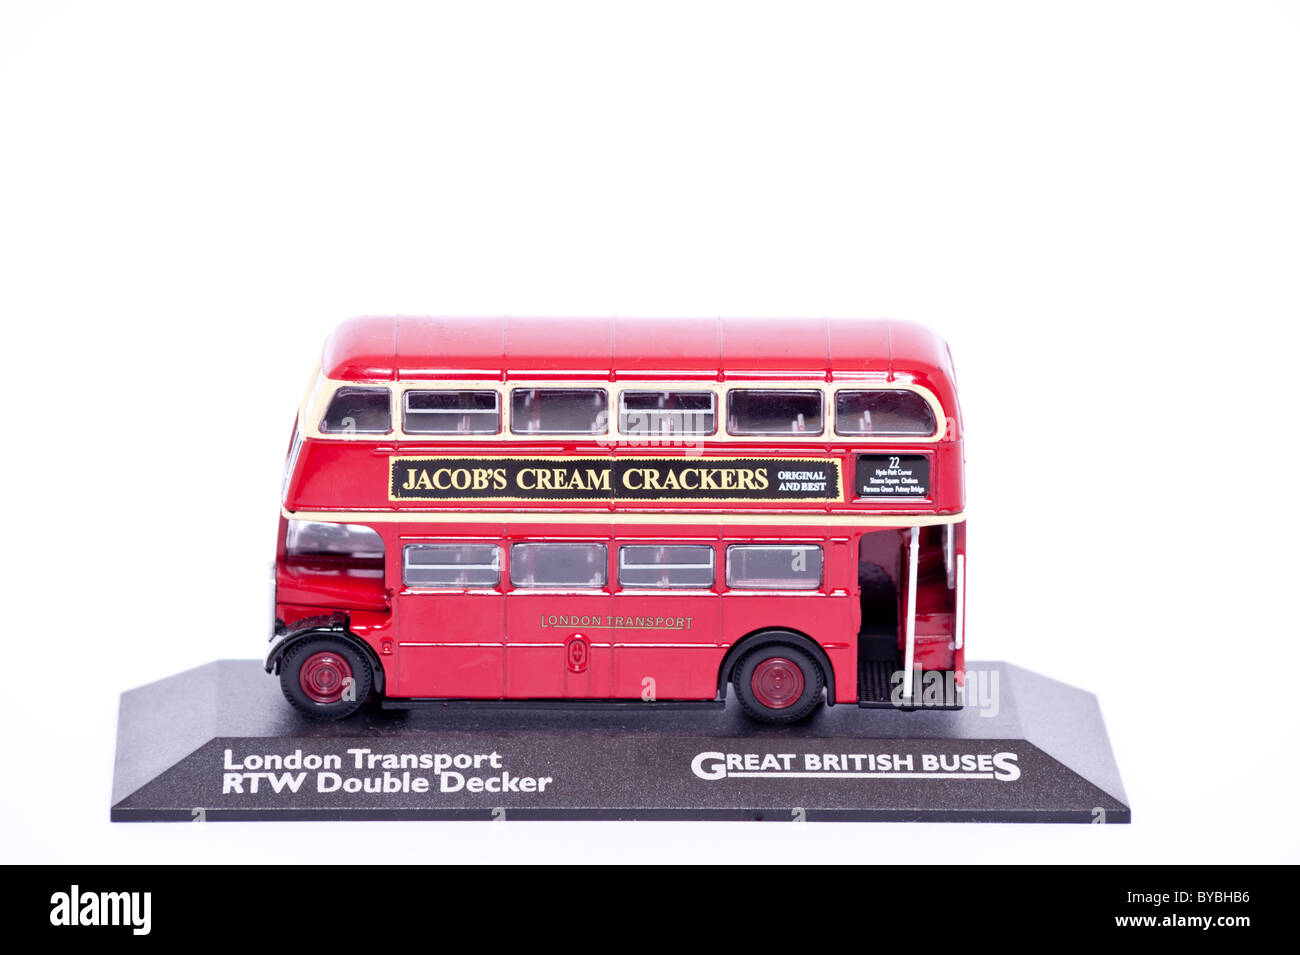 Juguetes de autobús, autobús escolar de doble piso, vehículos de Londres,  turismo por la ciudad, autobús de juguete de metal fundido a presión